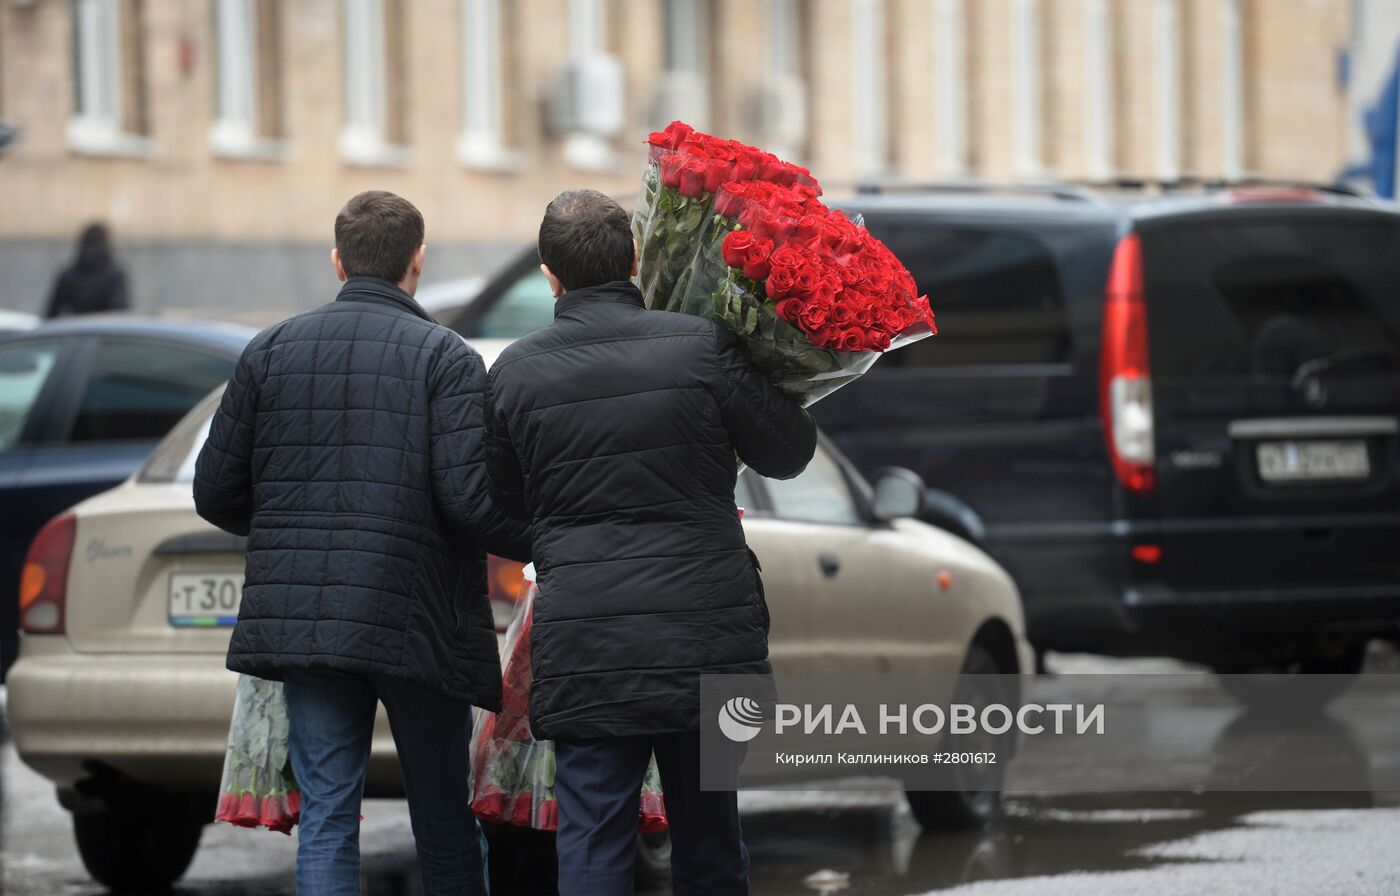 Продажа цветов к 8 марта в Москве